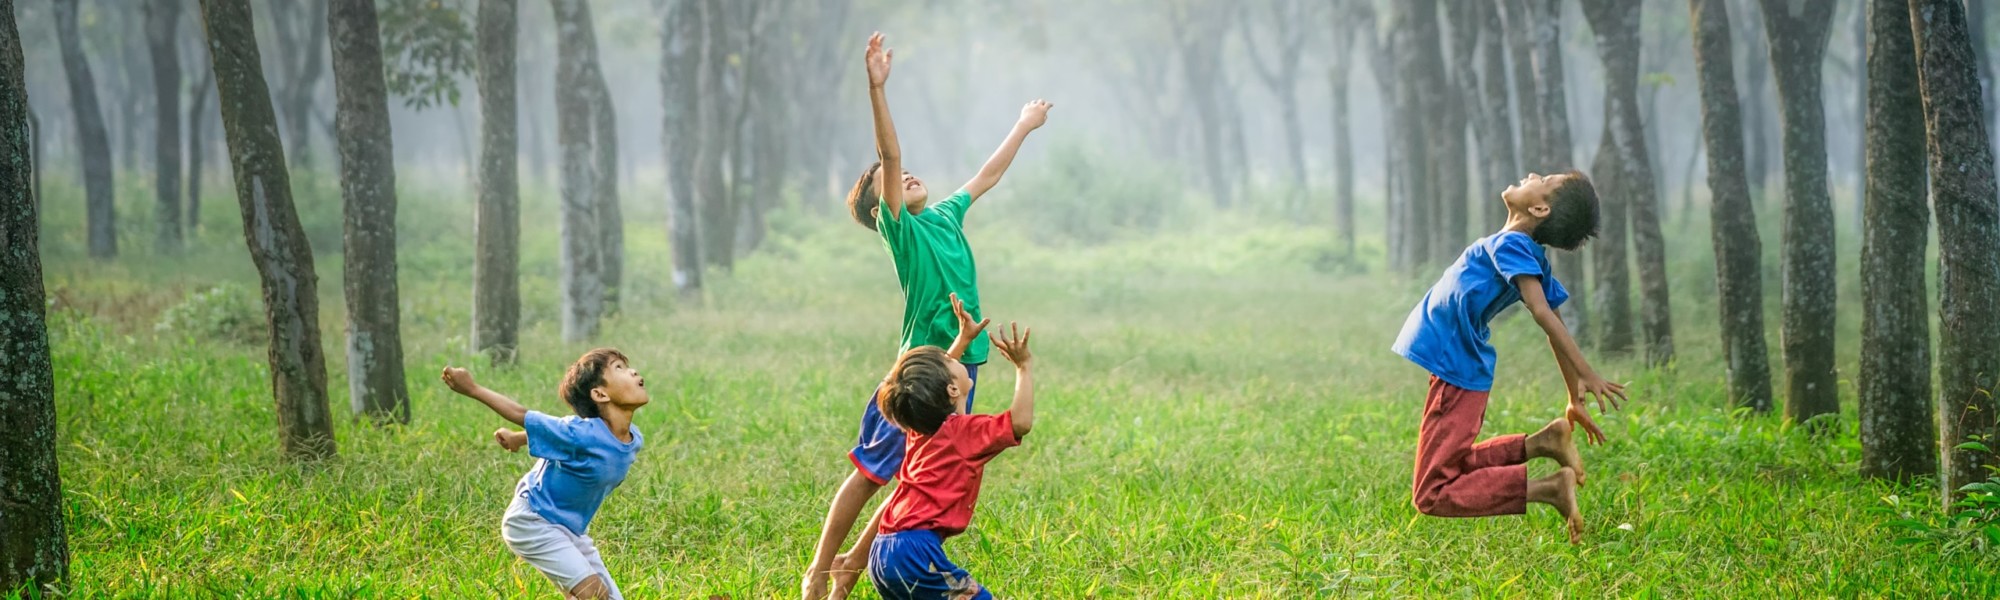 Kuvassa on neljä ilmaan hyppäävää iloista lasta vihreän luonnon keskellä.